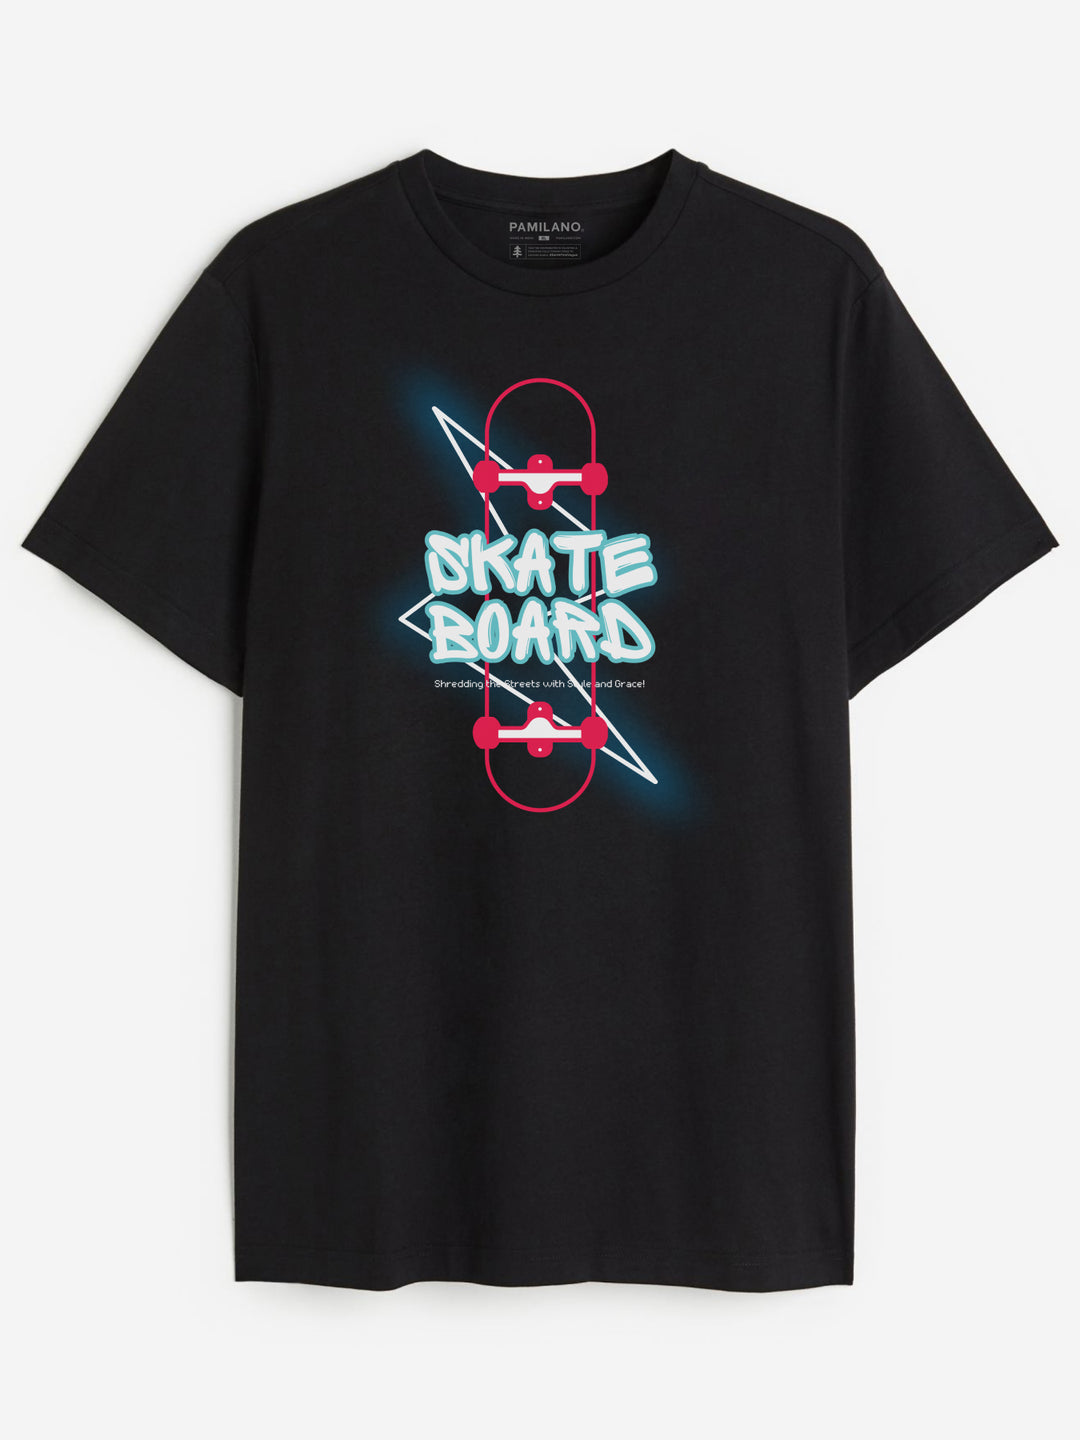 Skate Board - Unisex T-Shirt